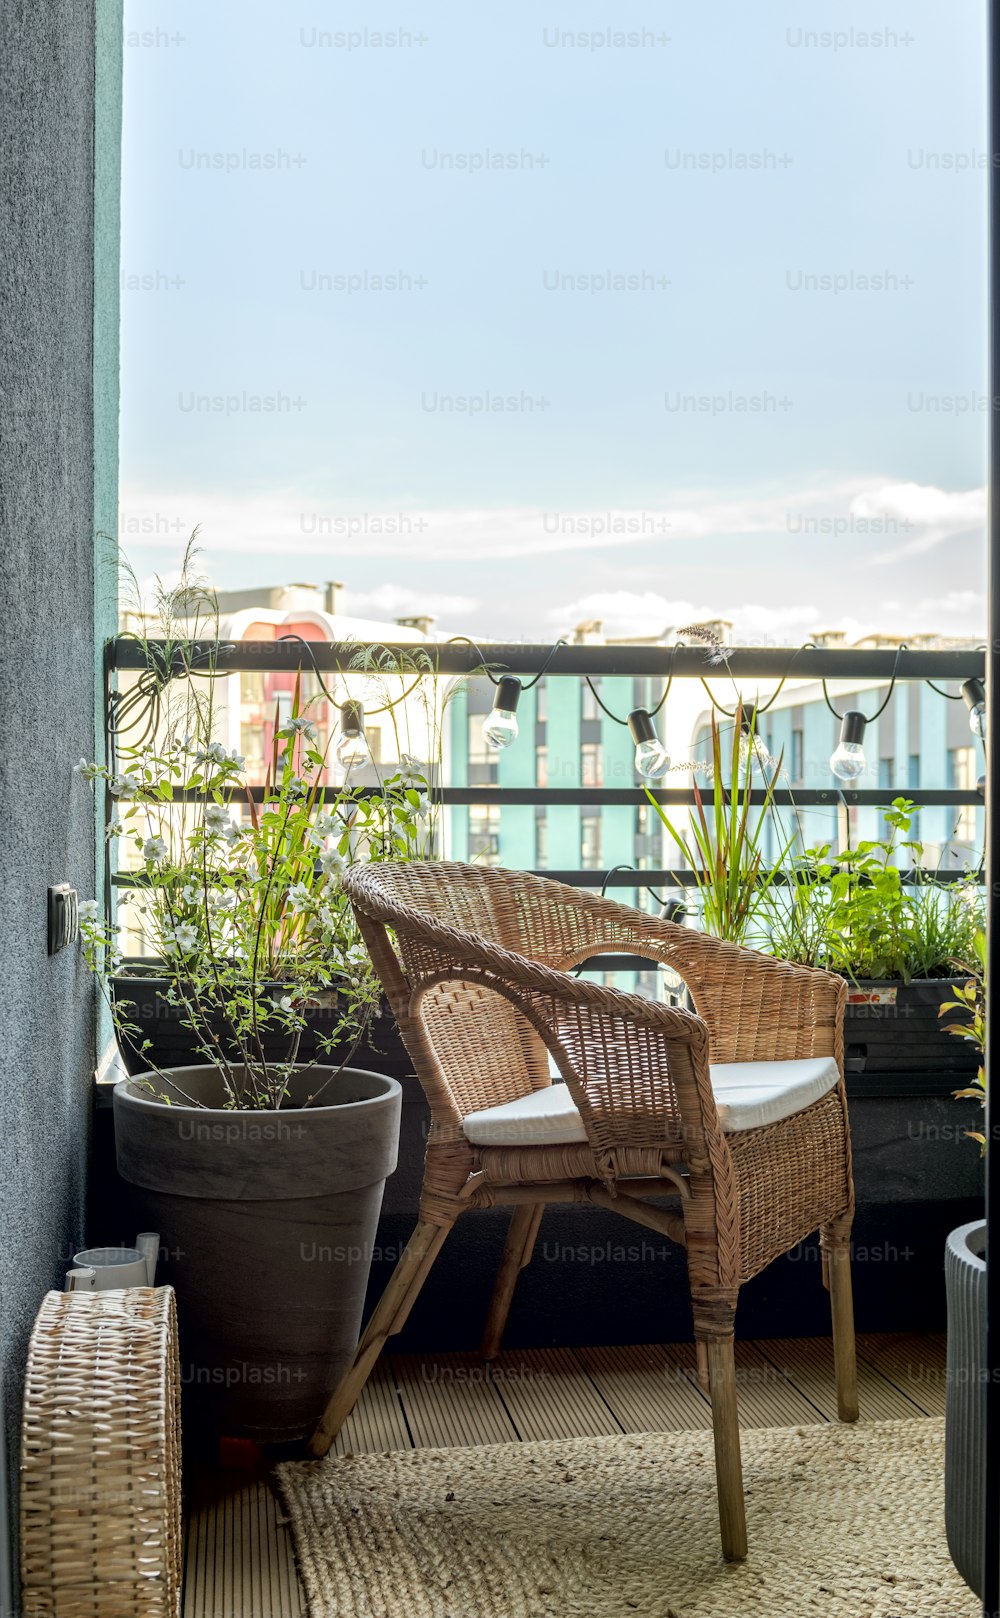 鉢植えの隣のバルコニーに座っている籐の椅子